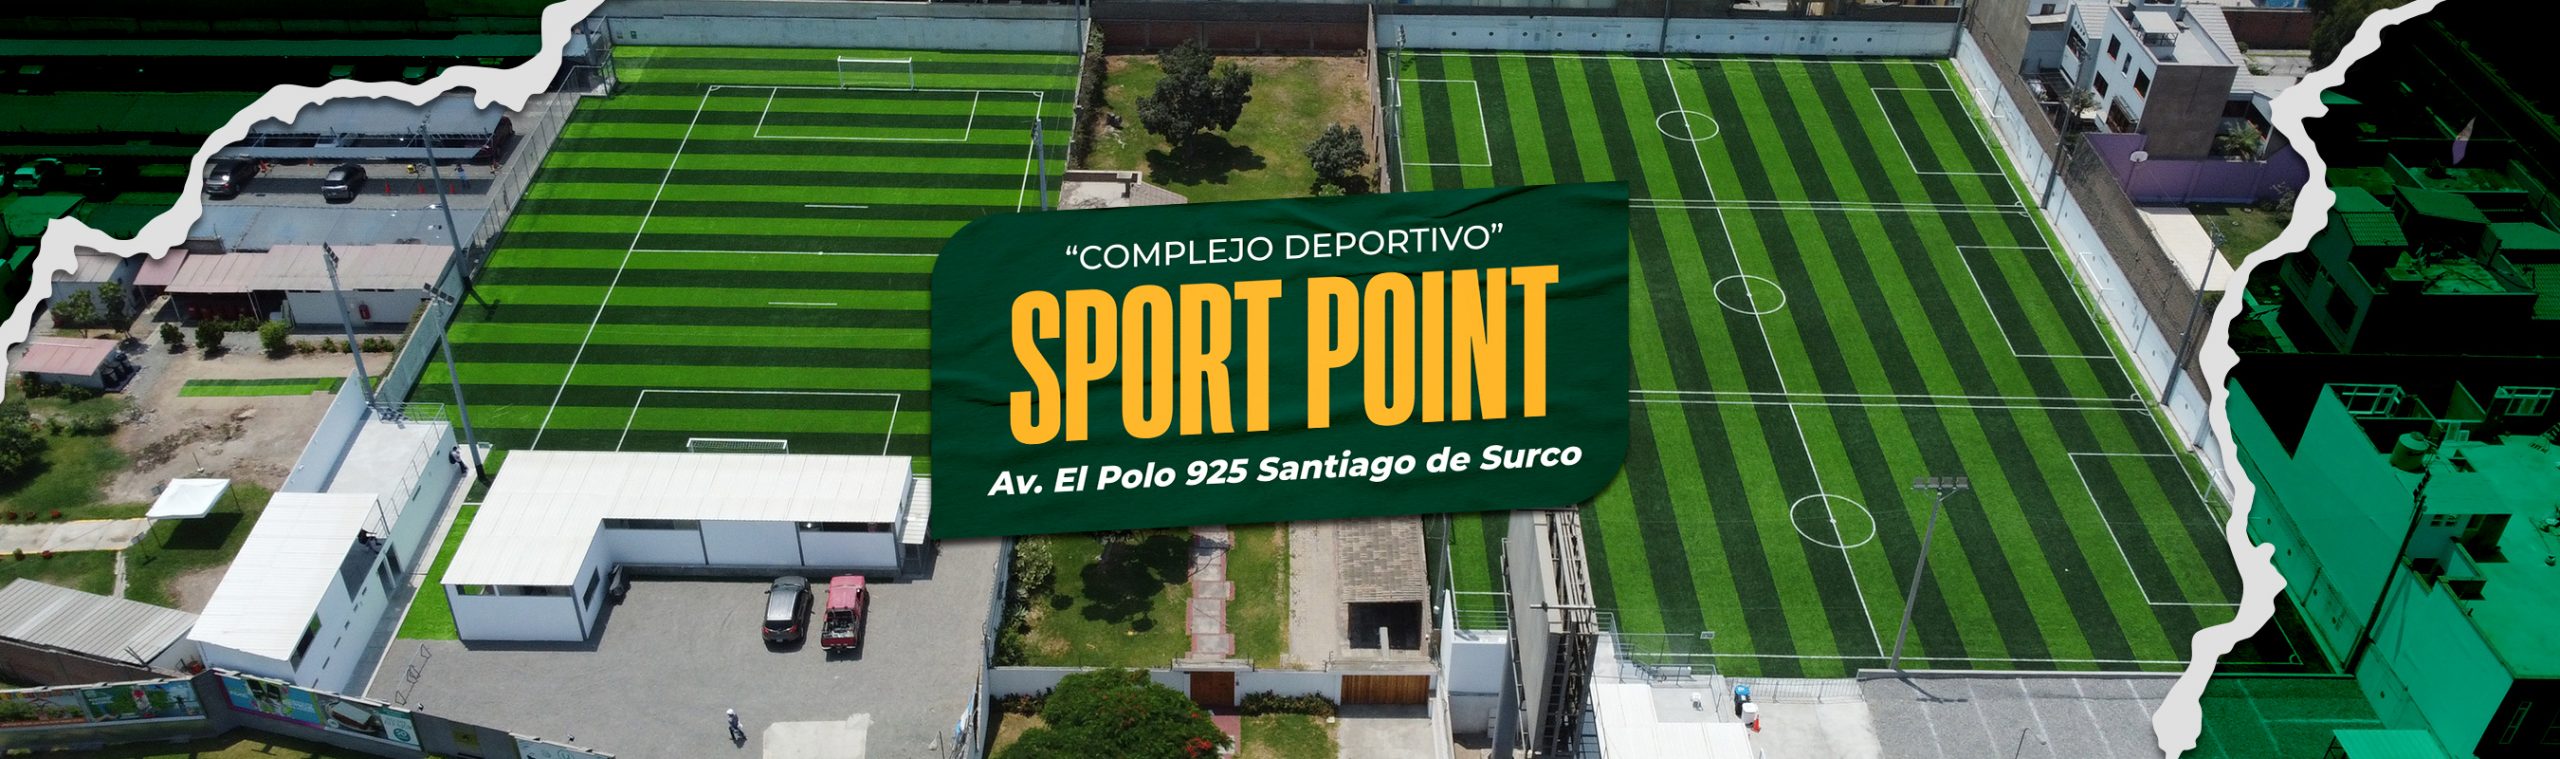 Cancha Estadio en Complejo deportivo Sport Point